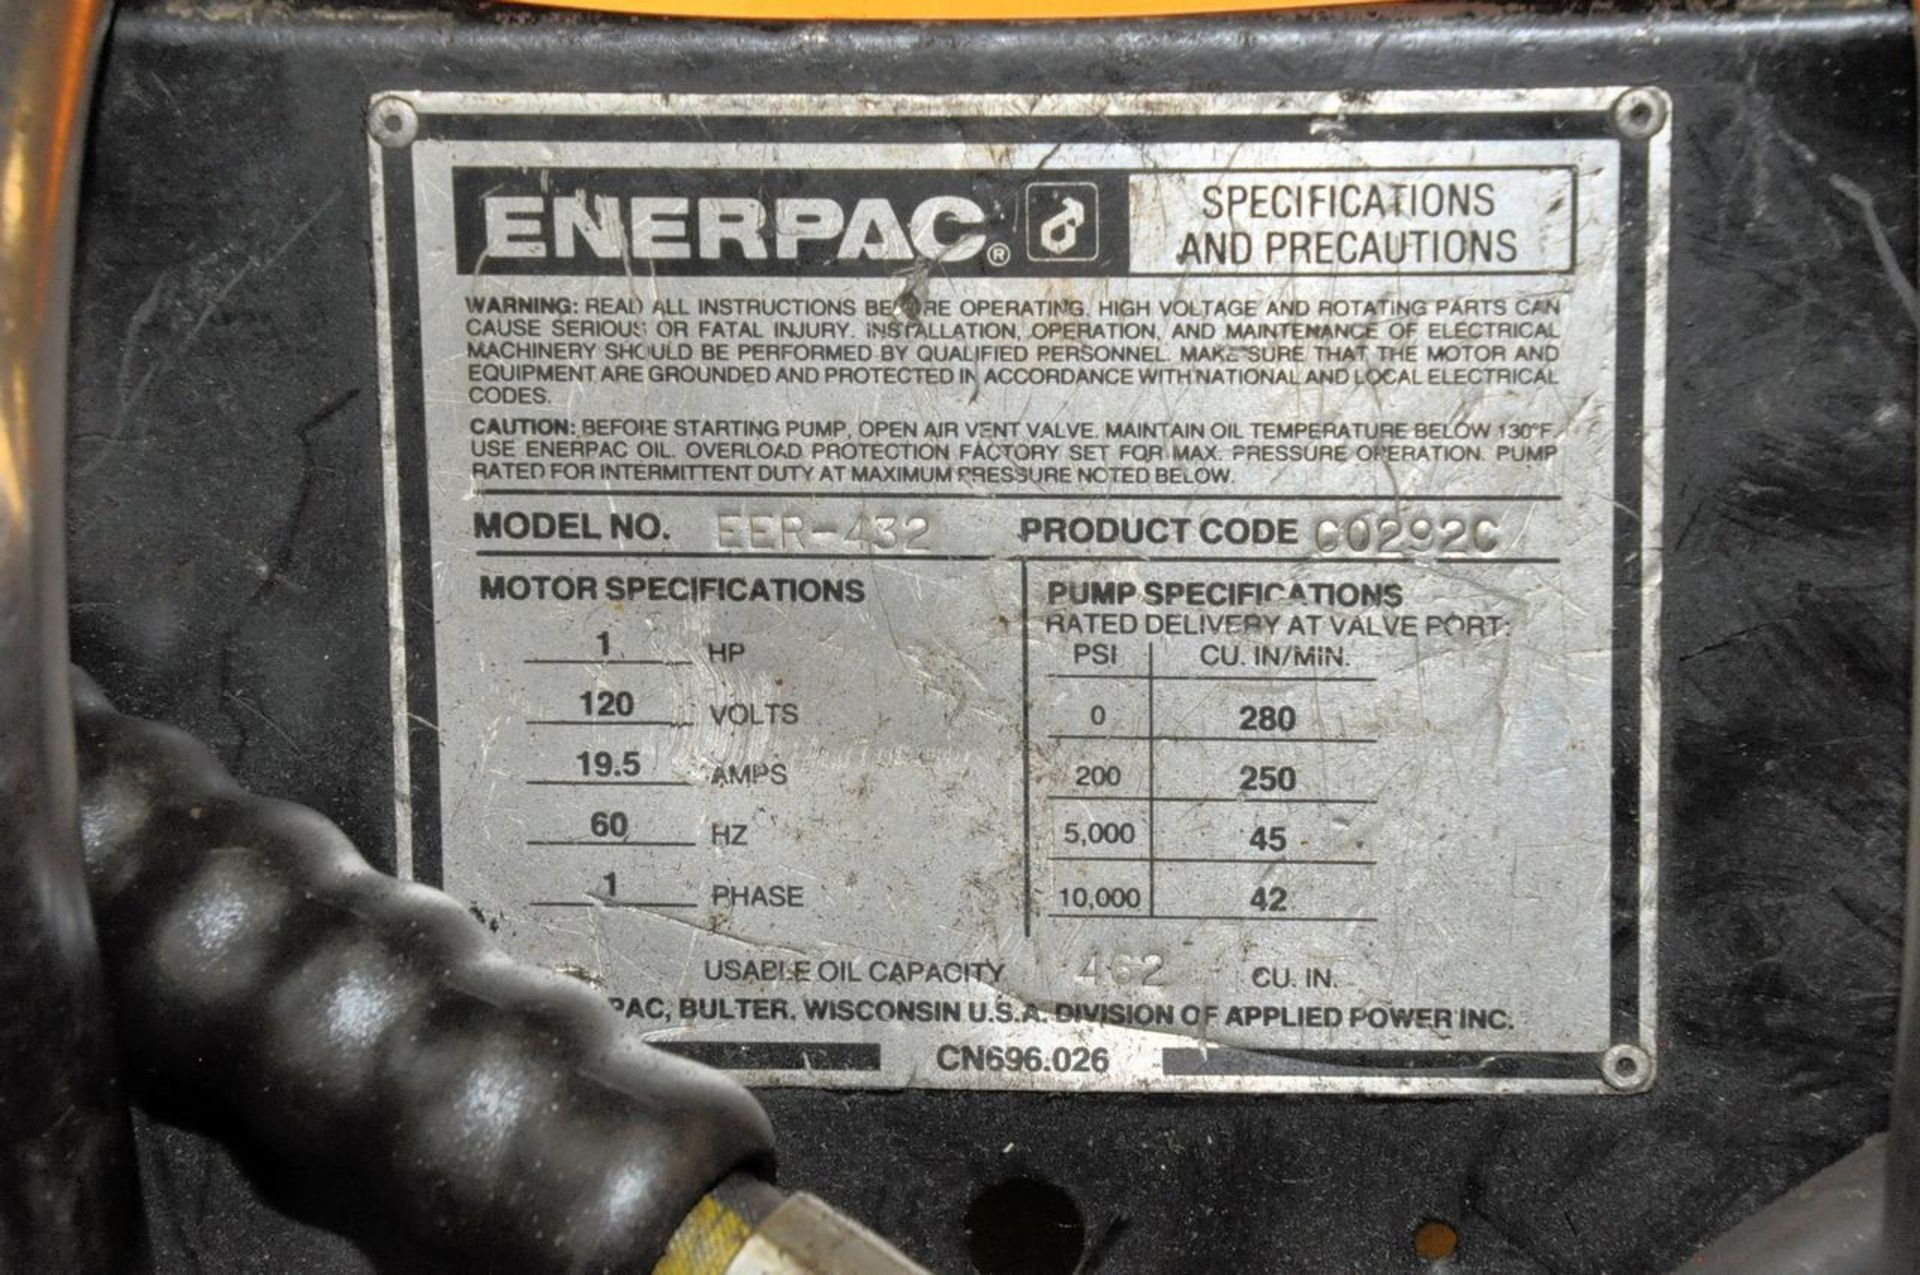 Enerpac EER-432 Electric Hydraulic Pump - Image 2 of 2